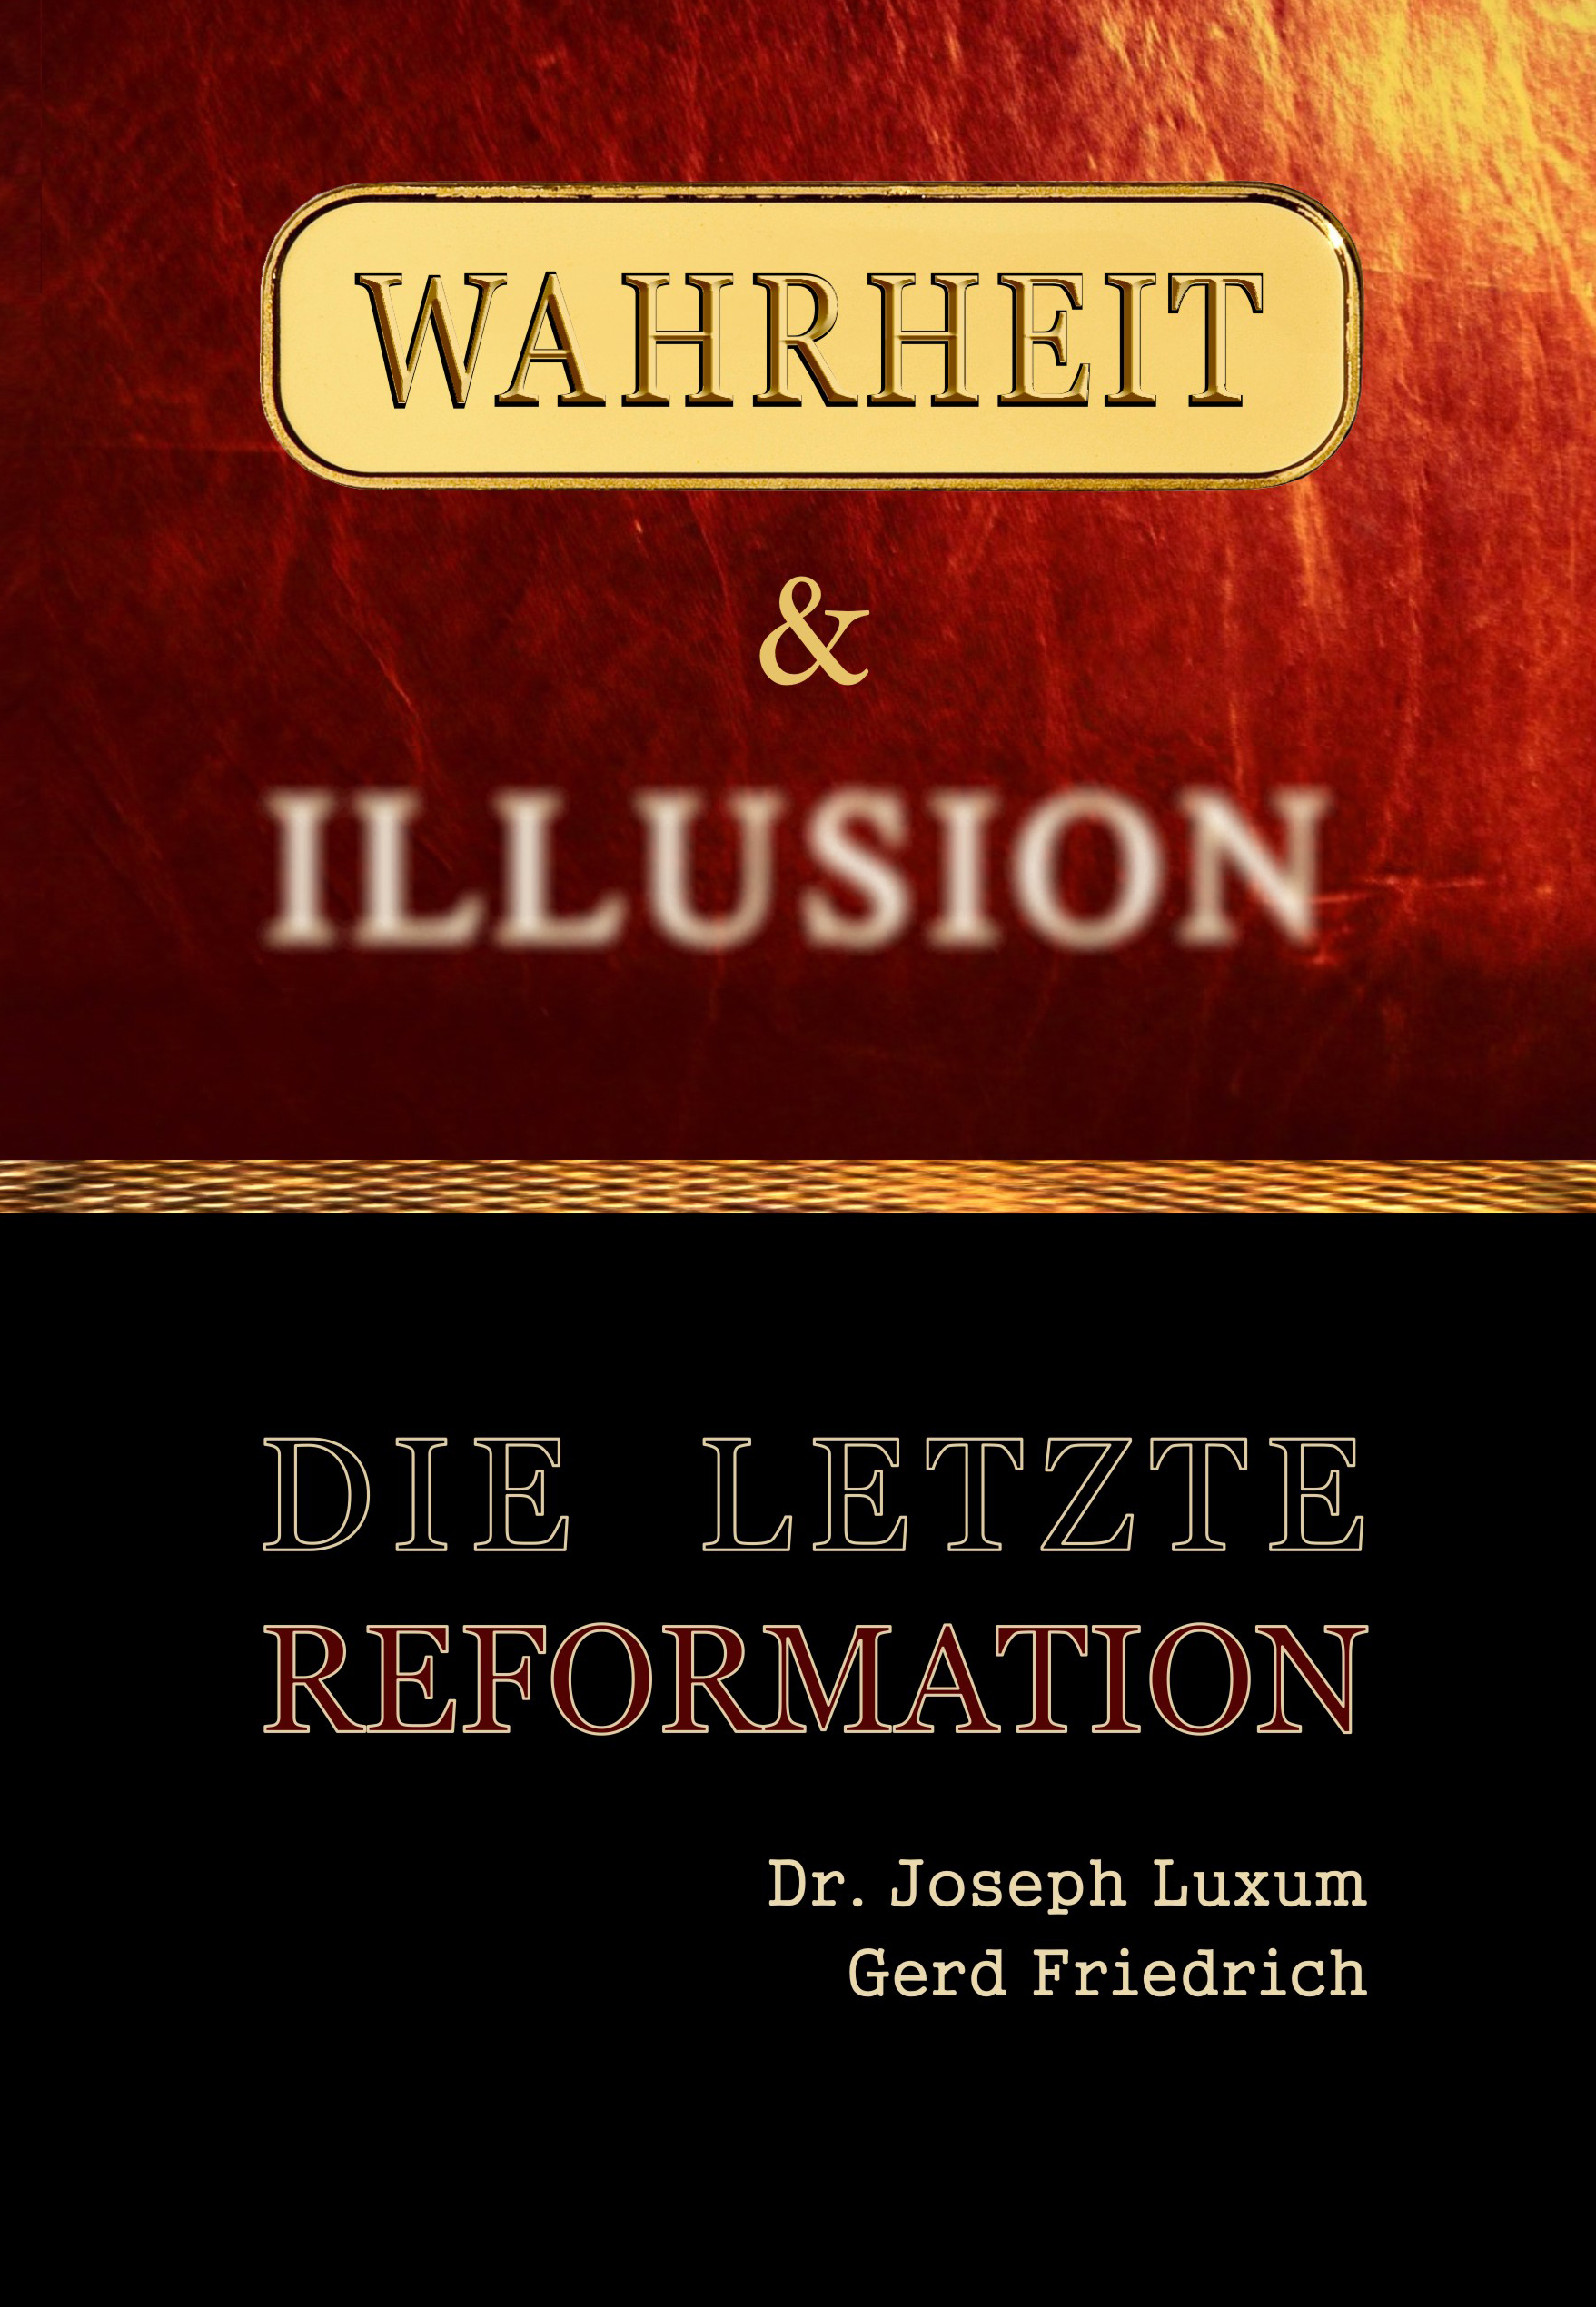 Wahrheit & Illusion - Die Letzte Reformation